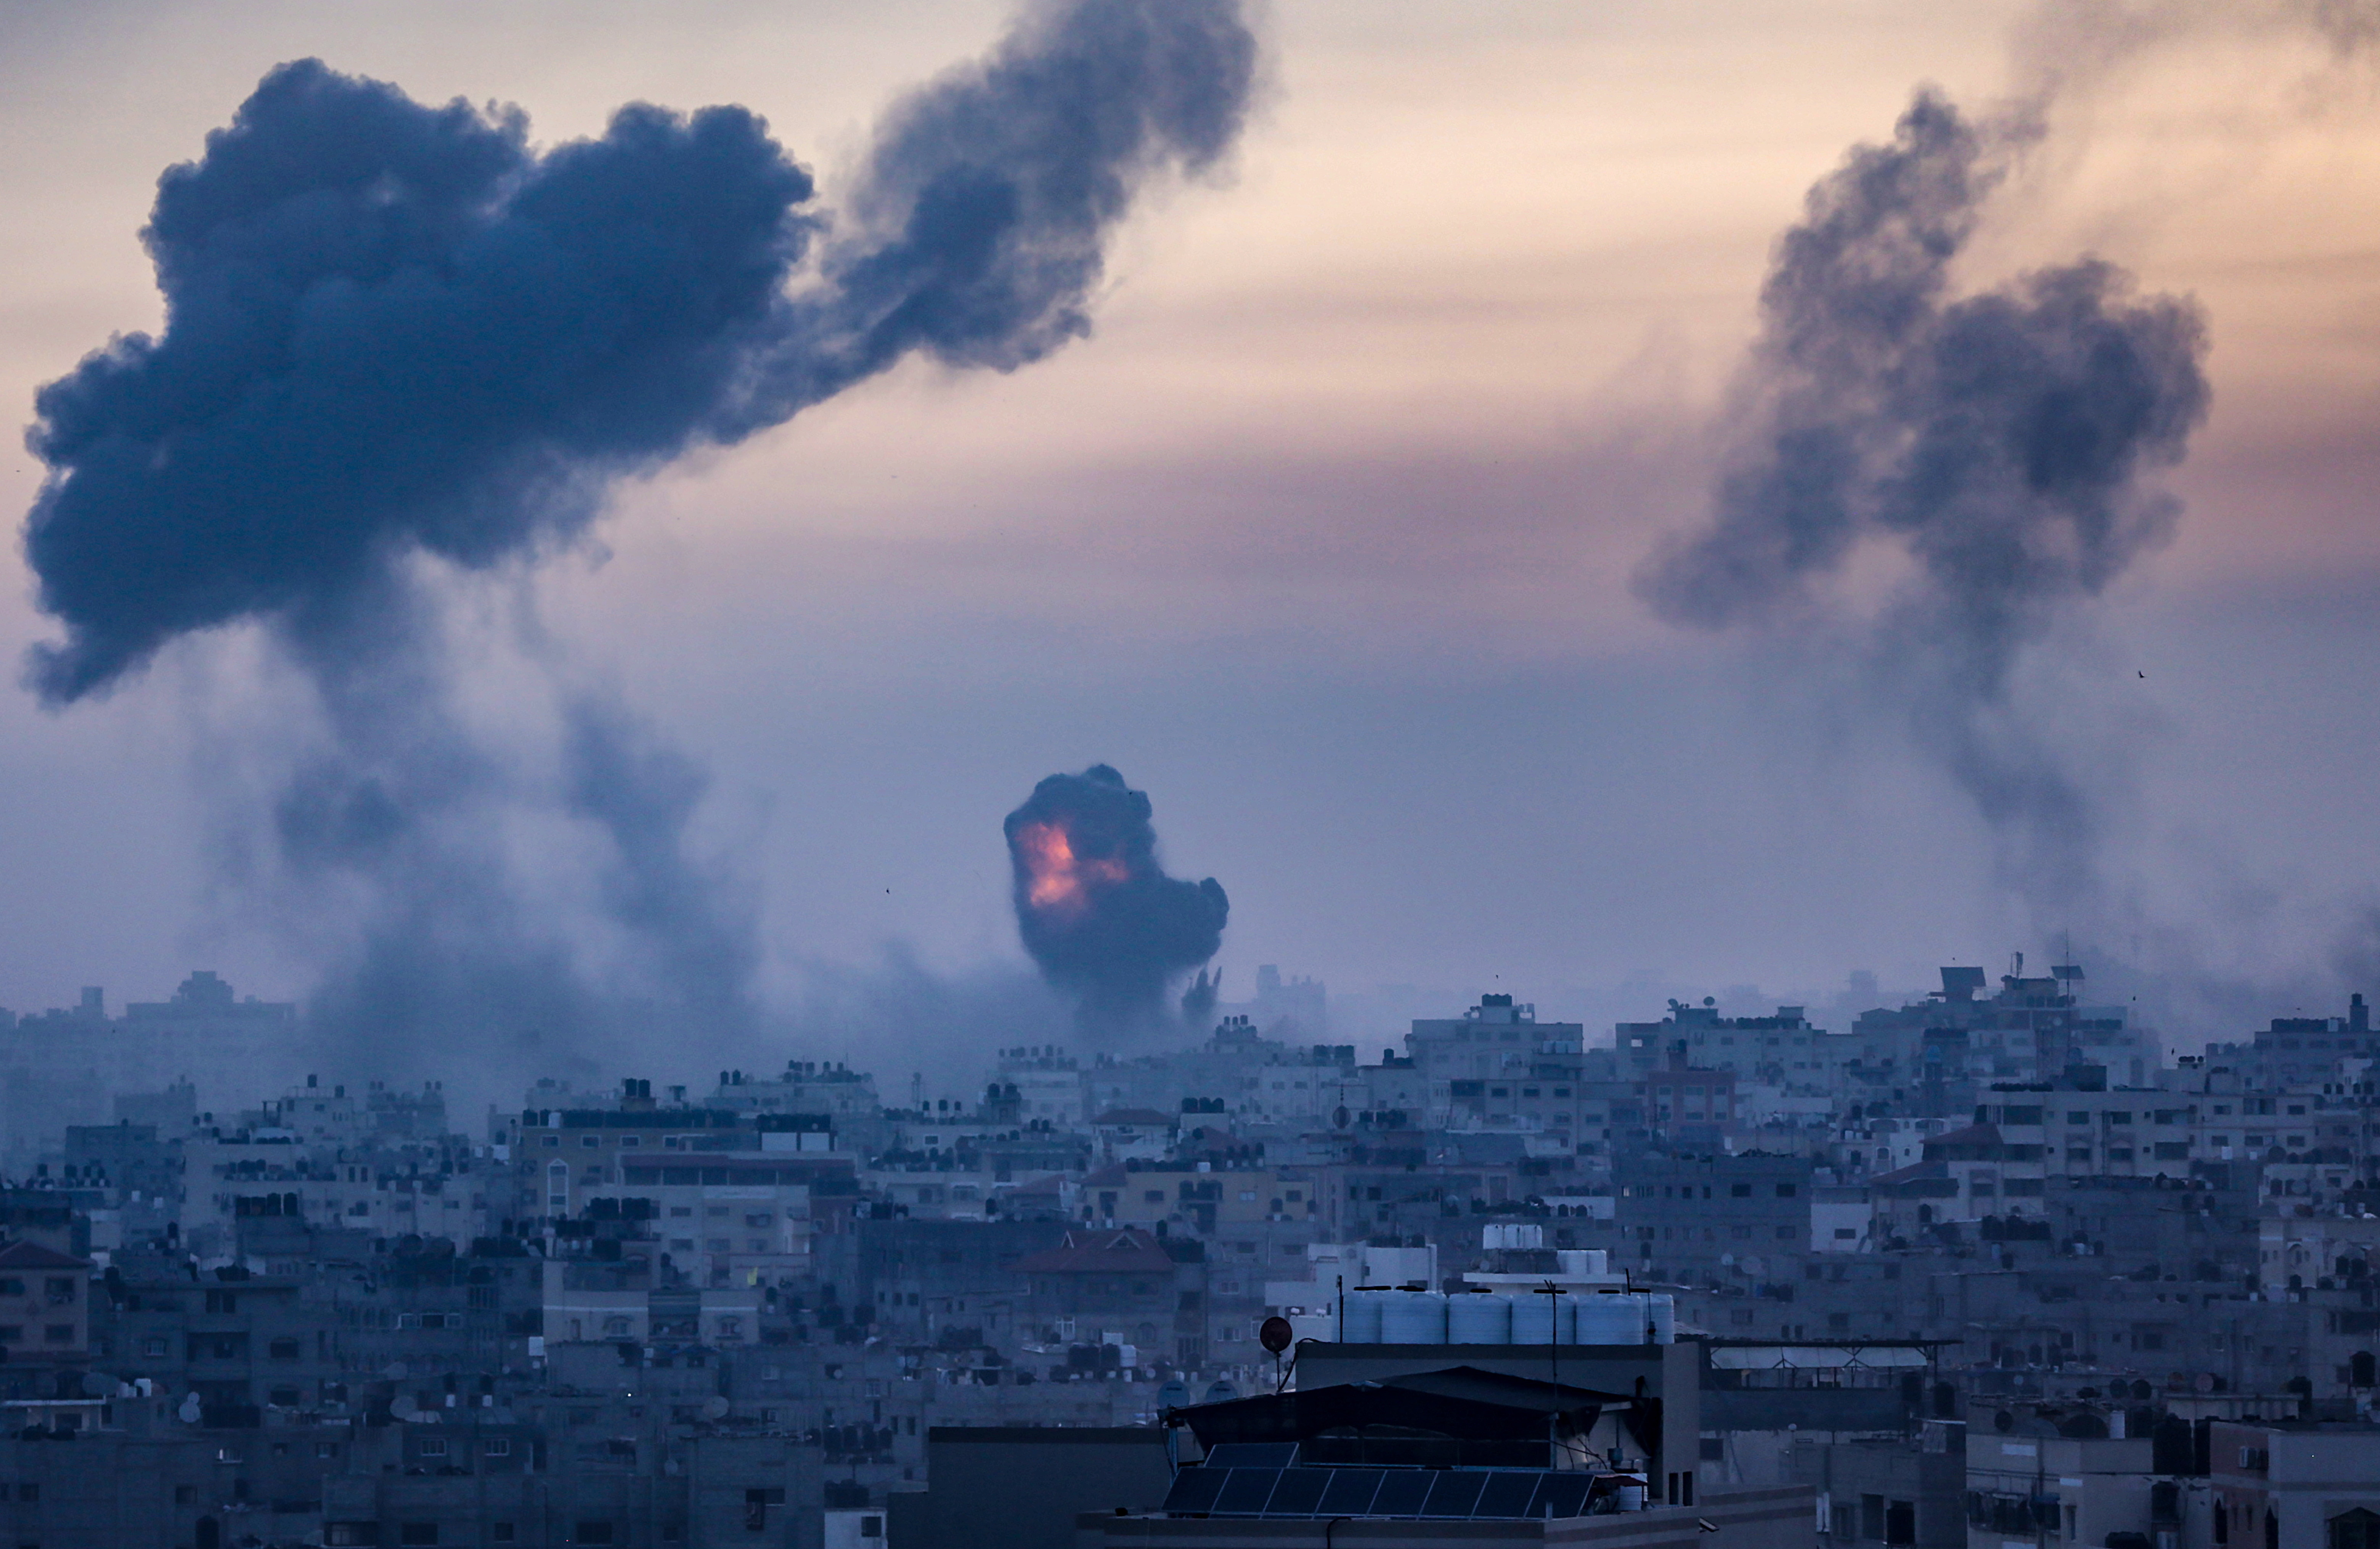 ”Este război”. De două zile, Israelul este supus unui baraj de rachete Hamas